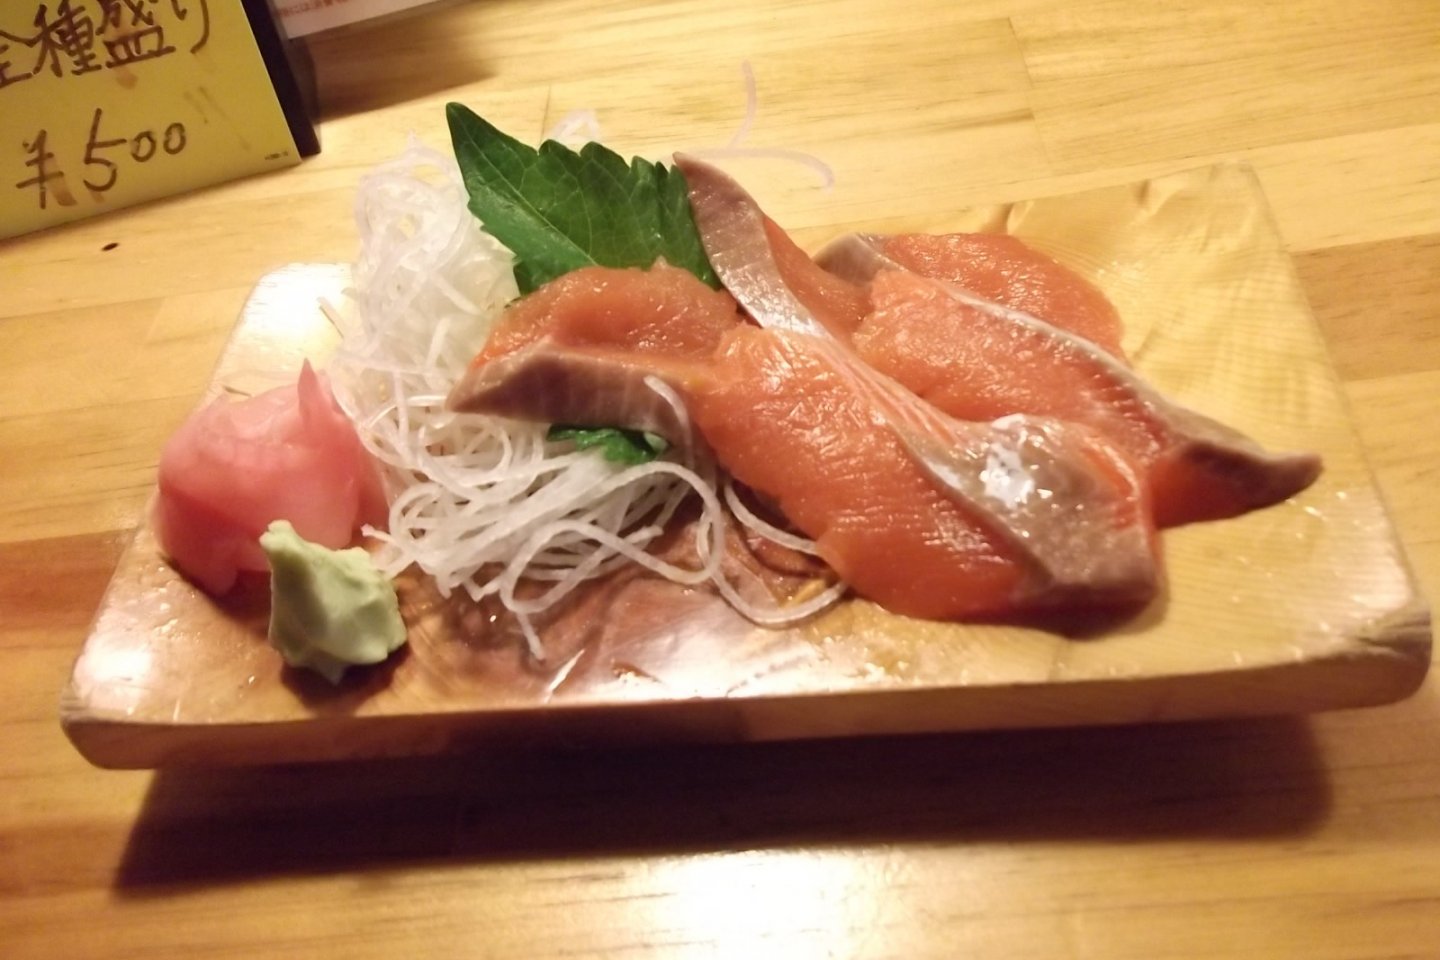 My tasty sashimi